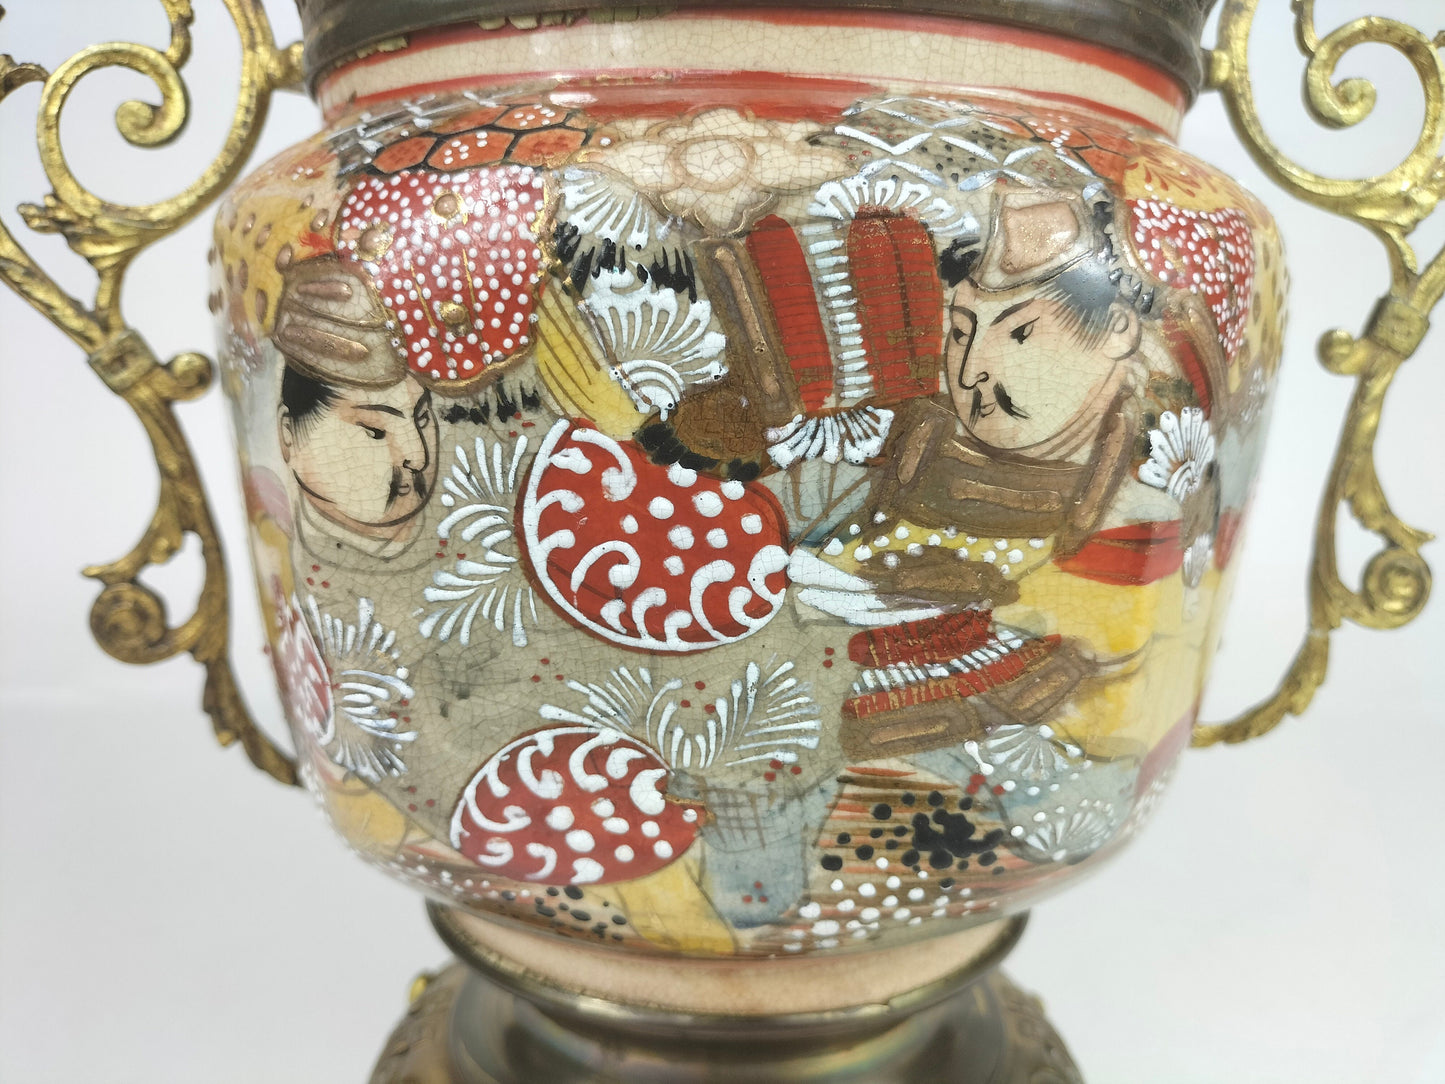 Antigo jarro japonês de satsuma decorado com latão dourado // Século XIX - Período Meiji